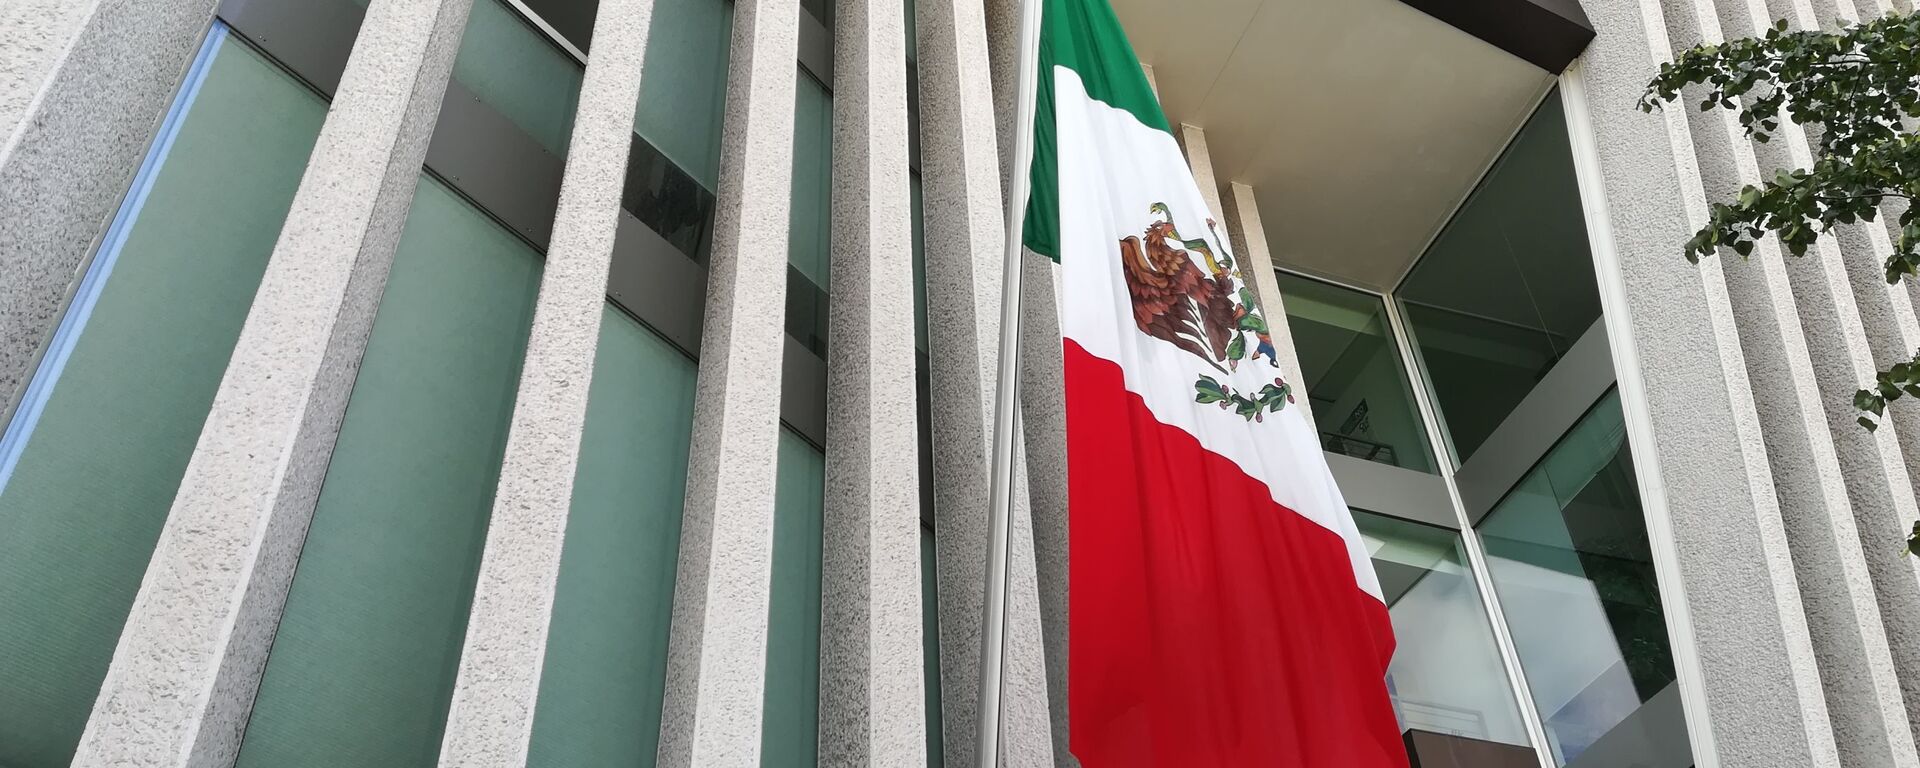 Bandera de México - Sputnik Mundo, 1920, 18.05.2020